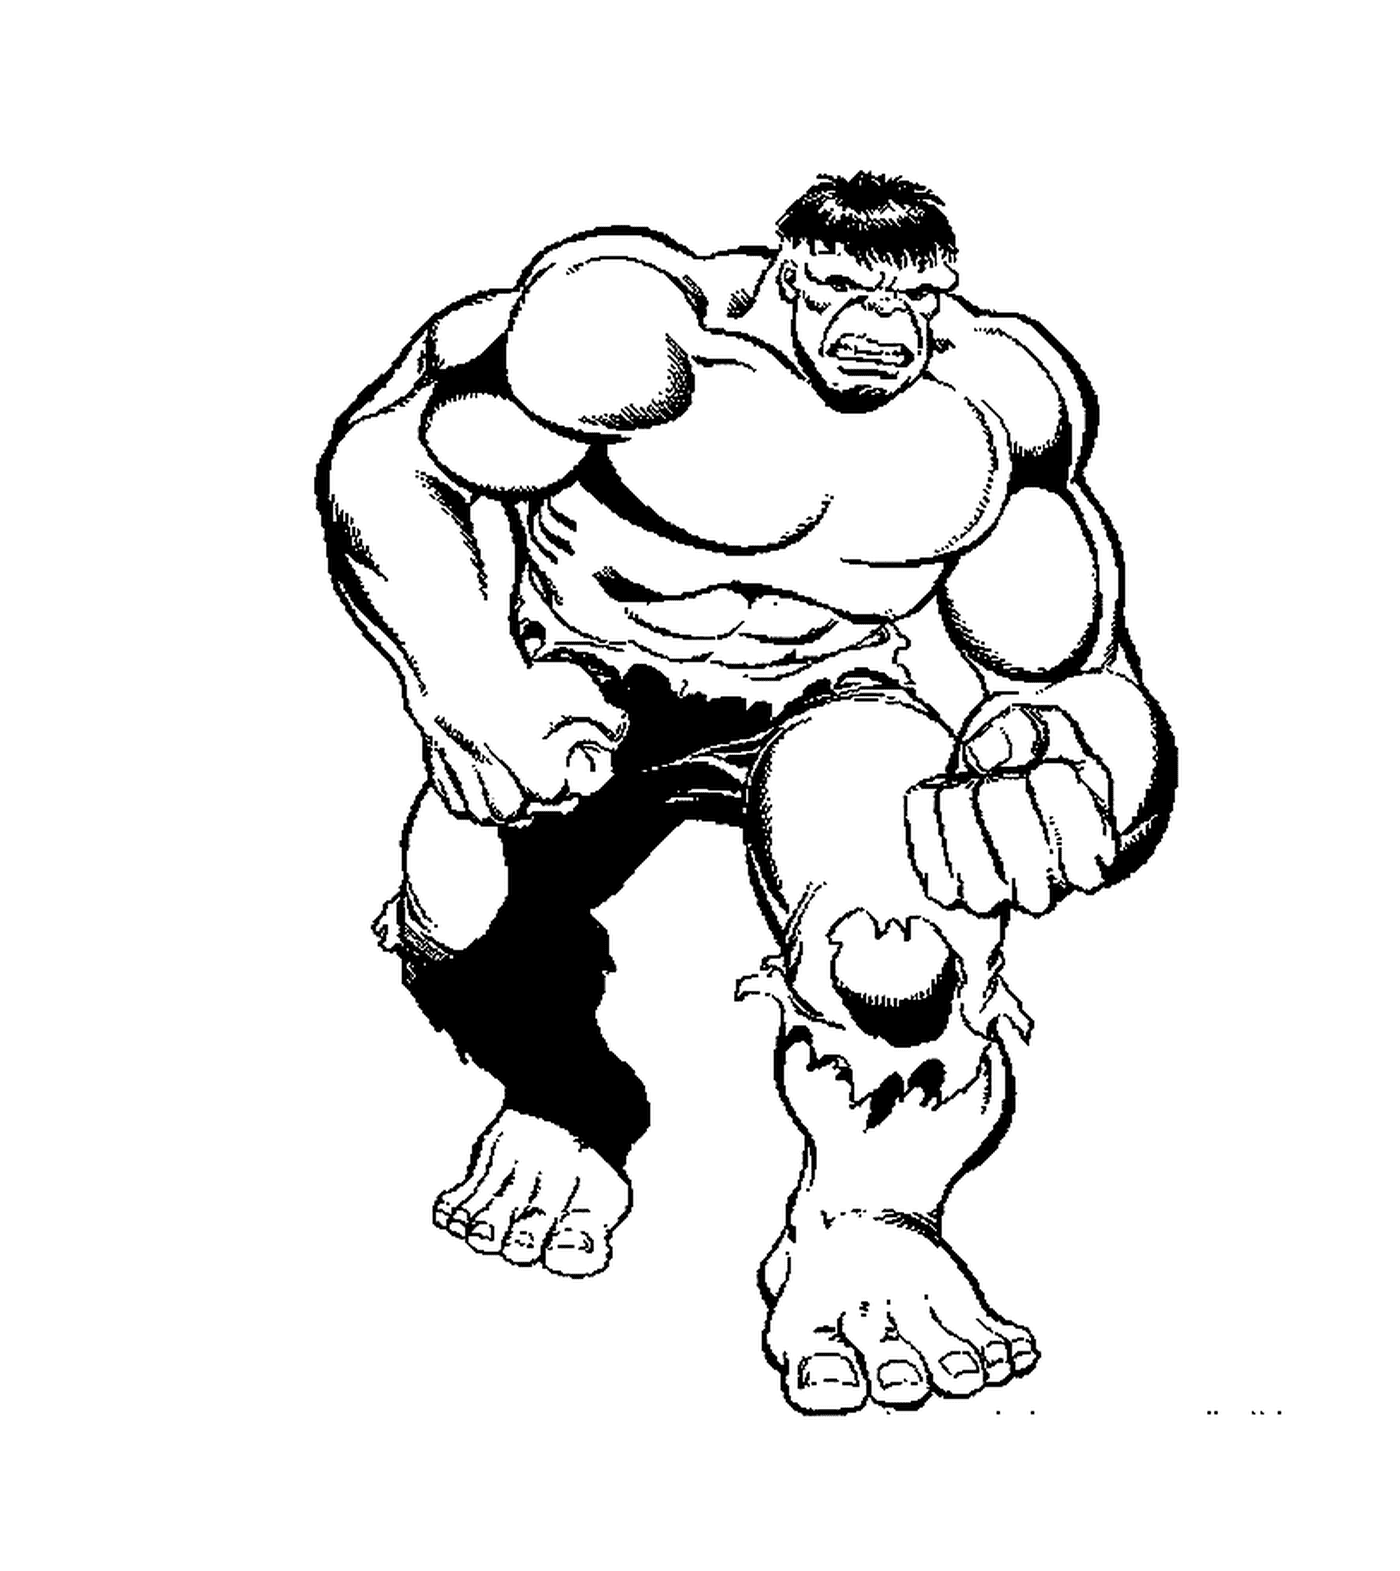  Hulk, einfache Version 